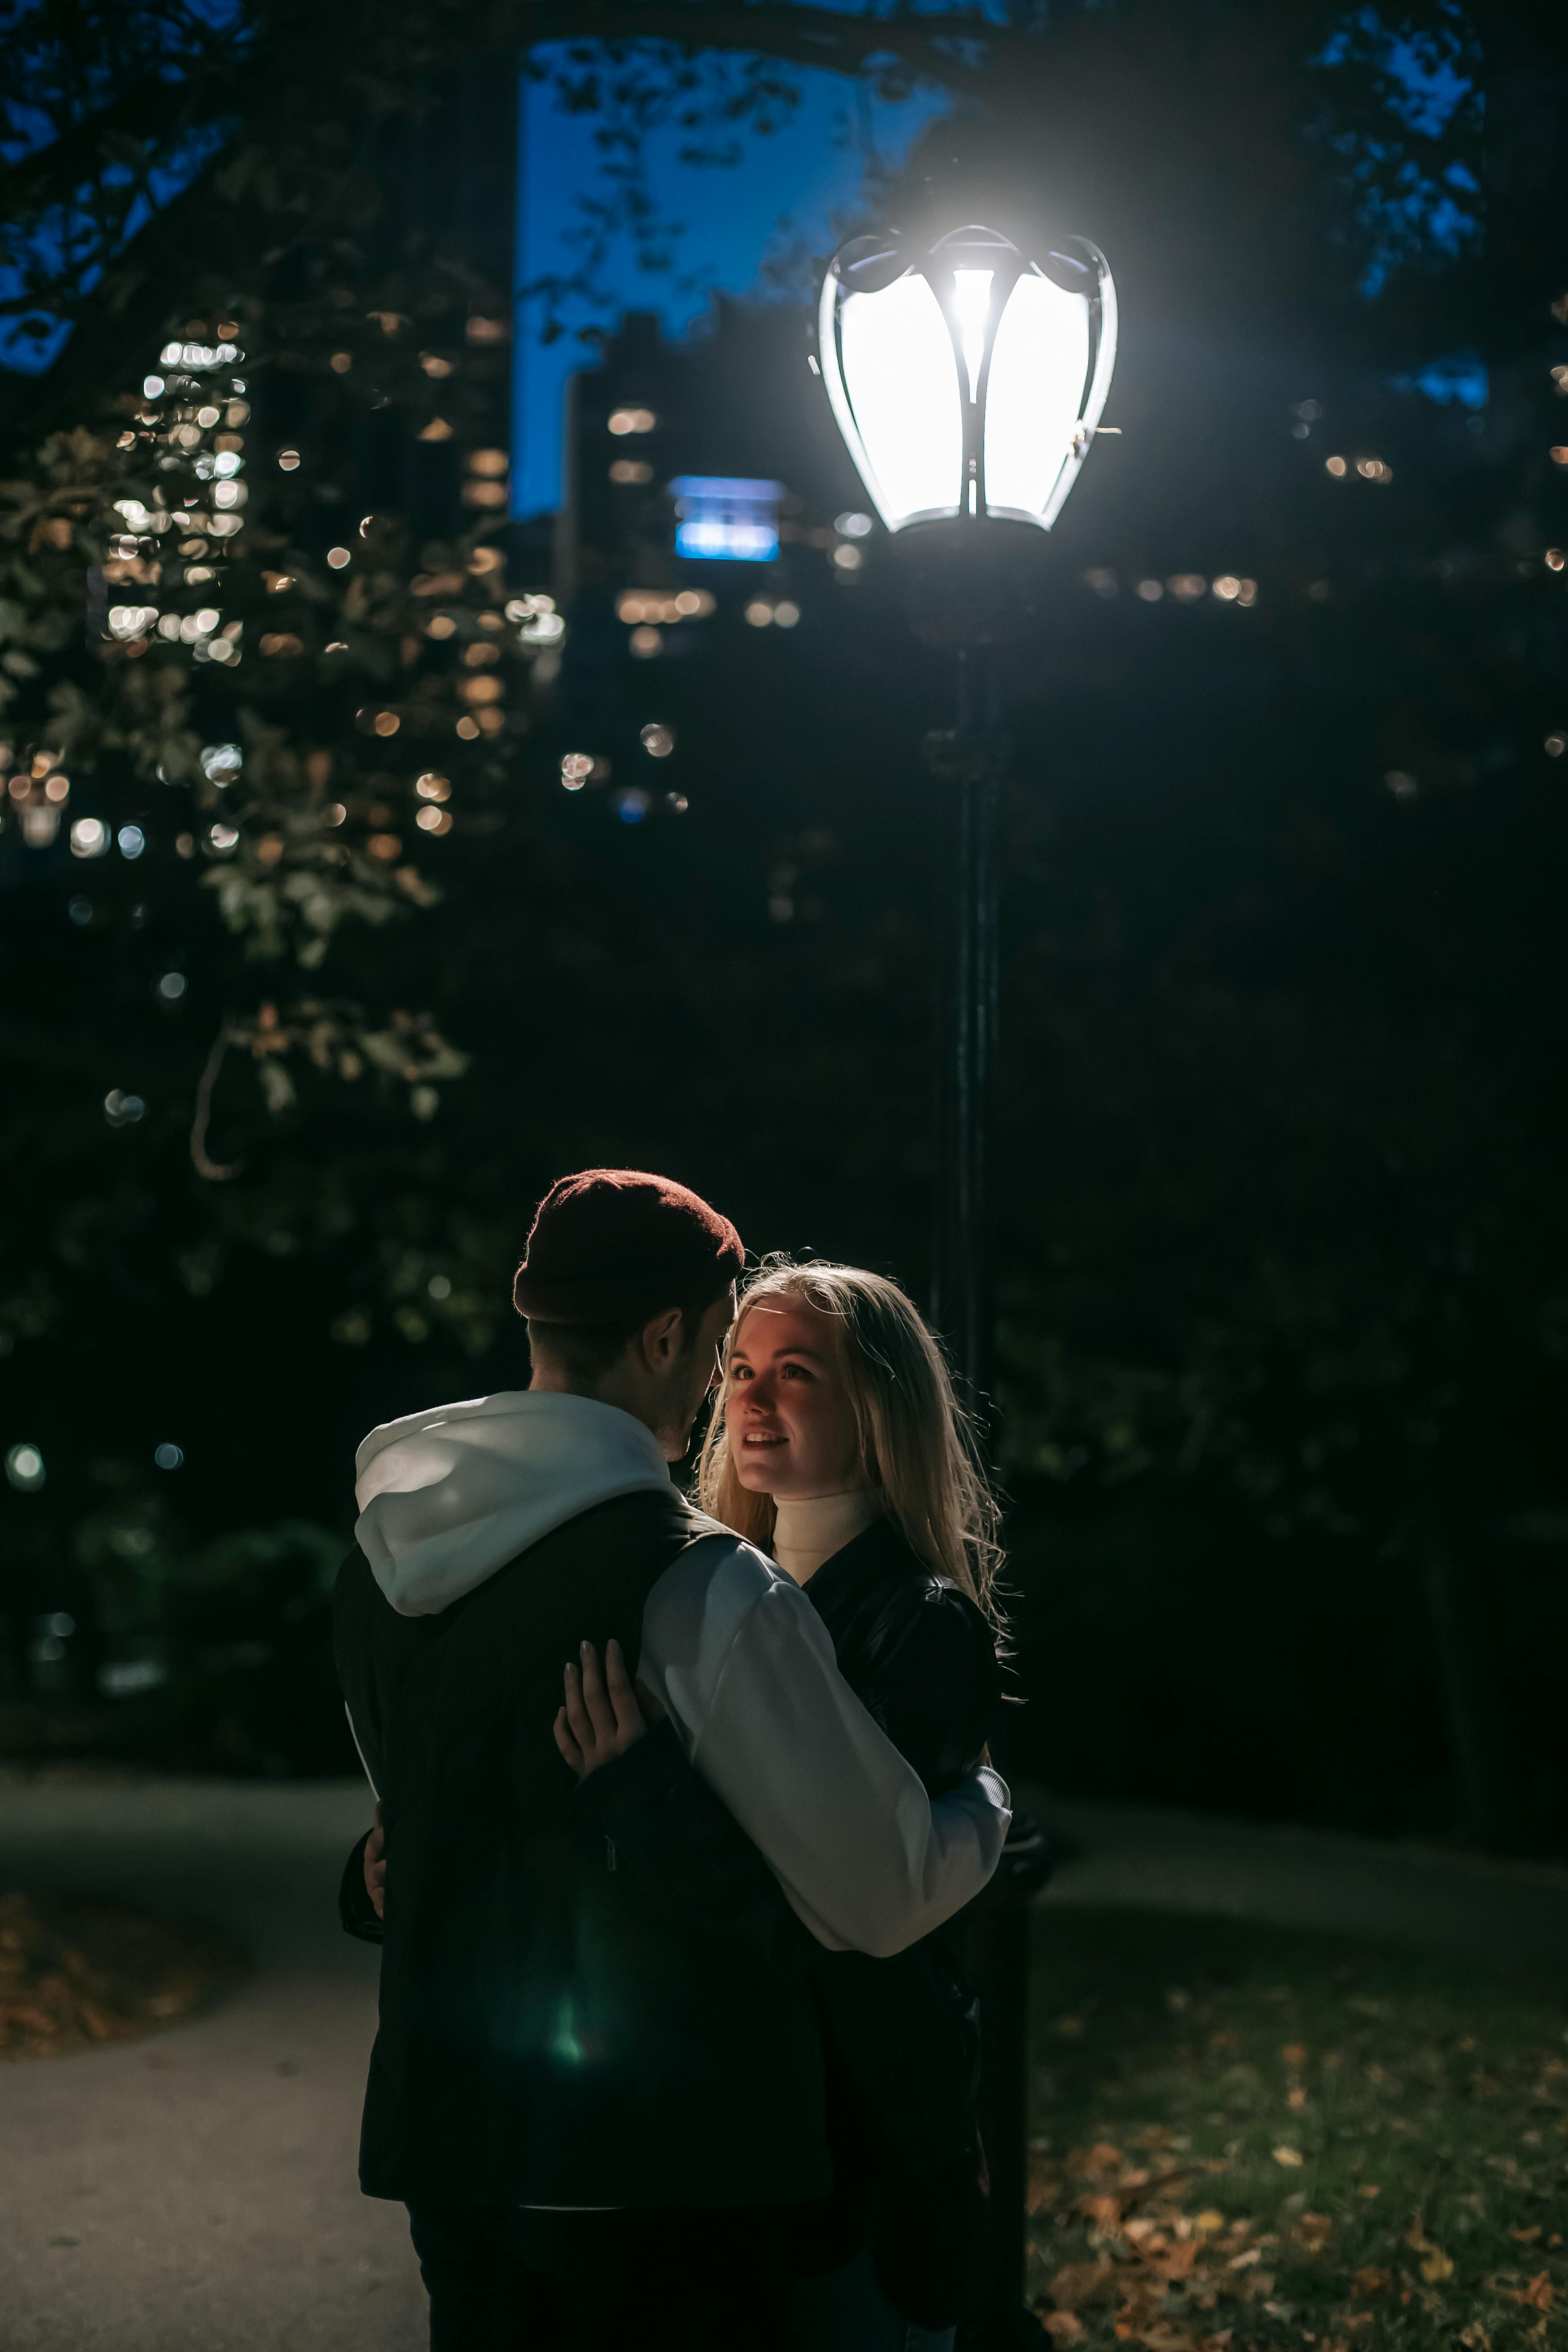 Ein Paar, das sich nachts in einem Park umarmt | Quelle: Pexels